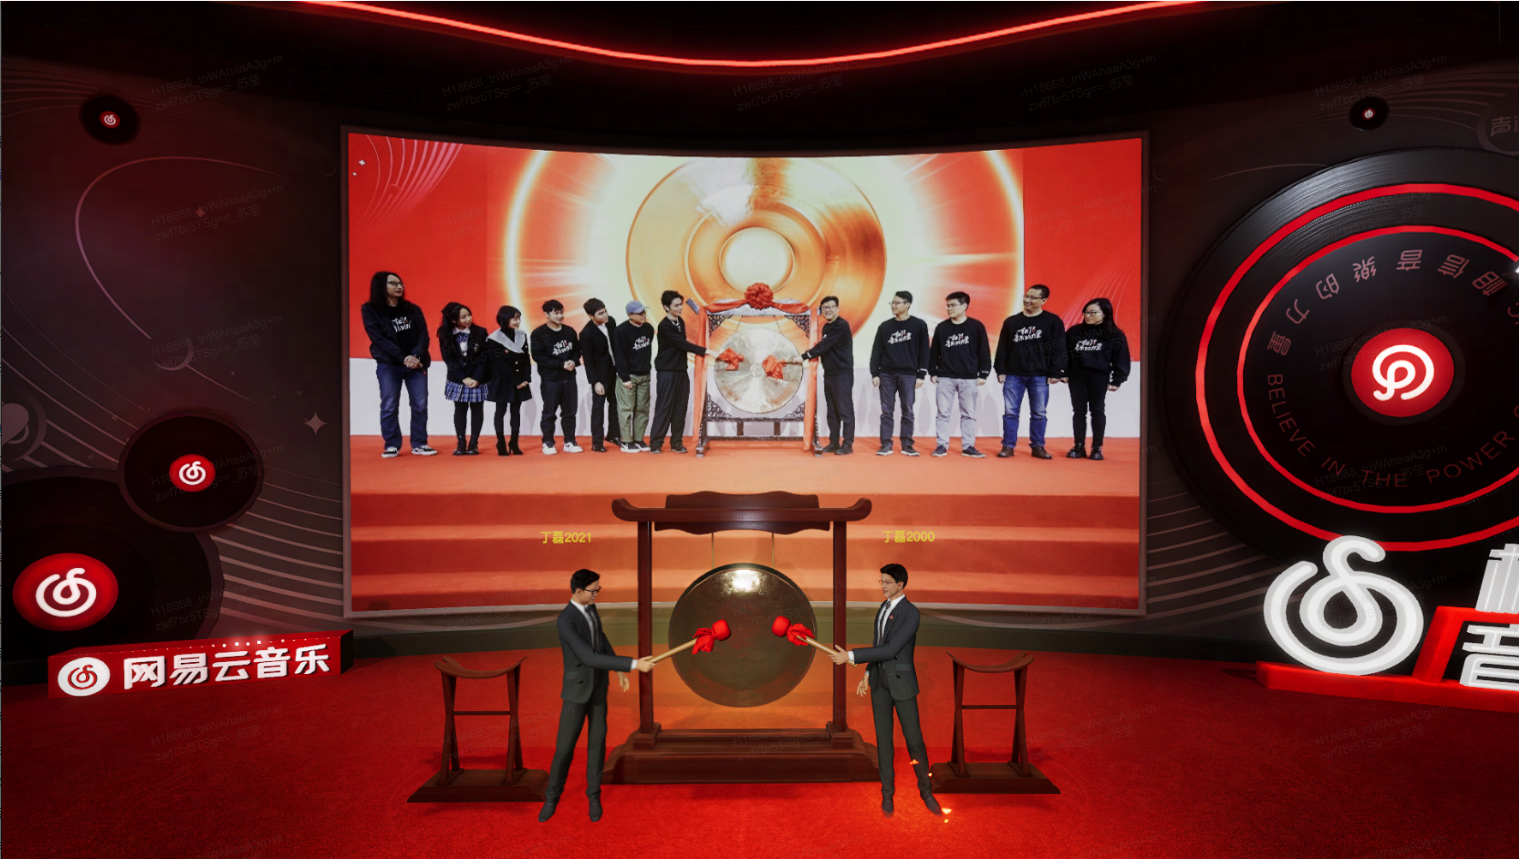 这是一张活动现场的照片，两人在台上握手，背景是大屏幕，上面显示着一些人物和中文文字，场景布置现代而庄重。